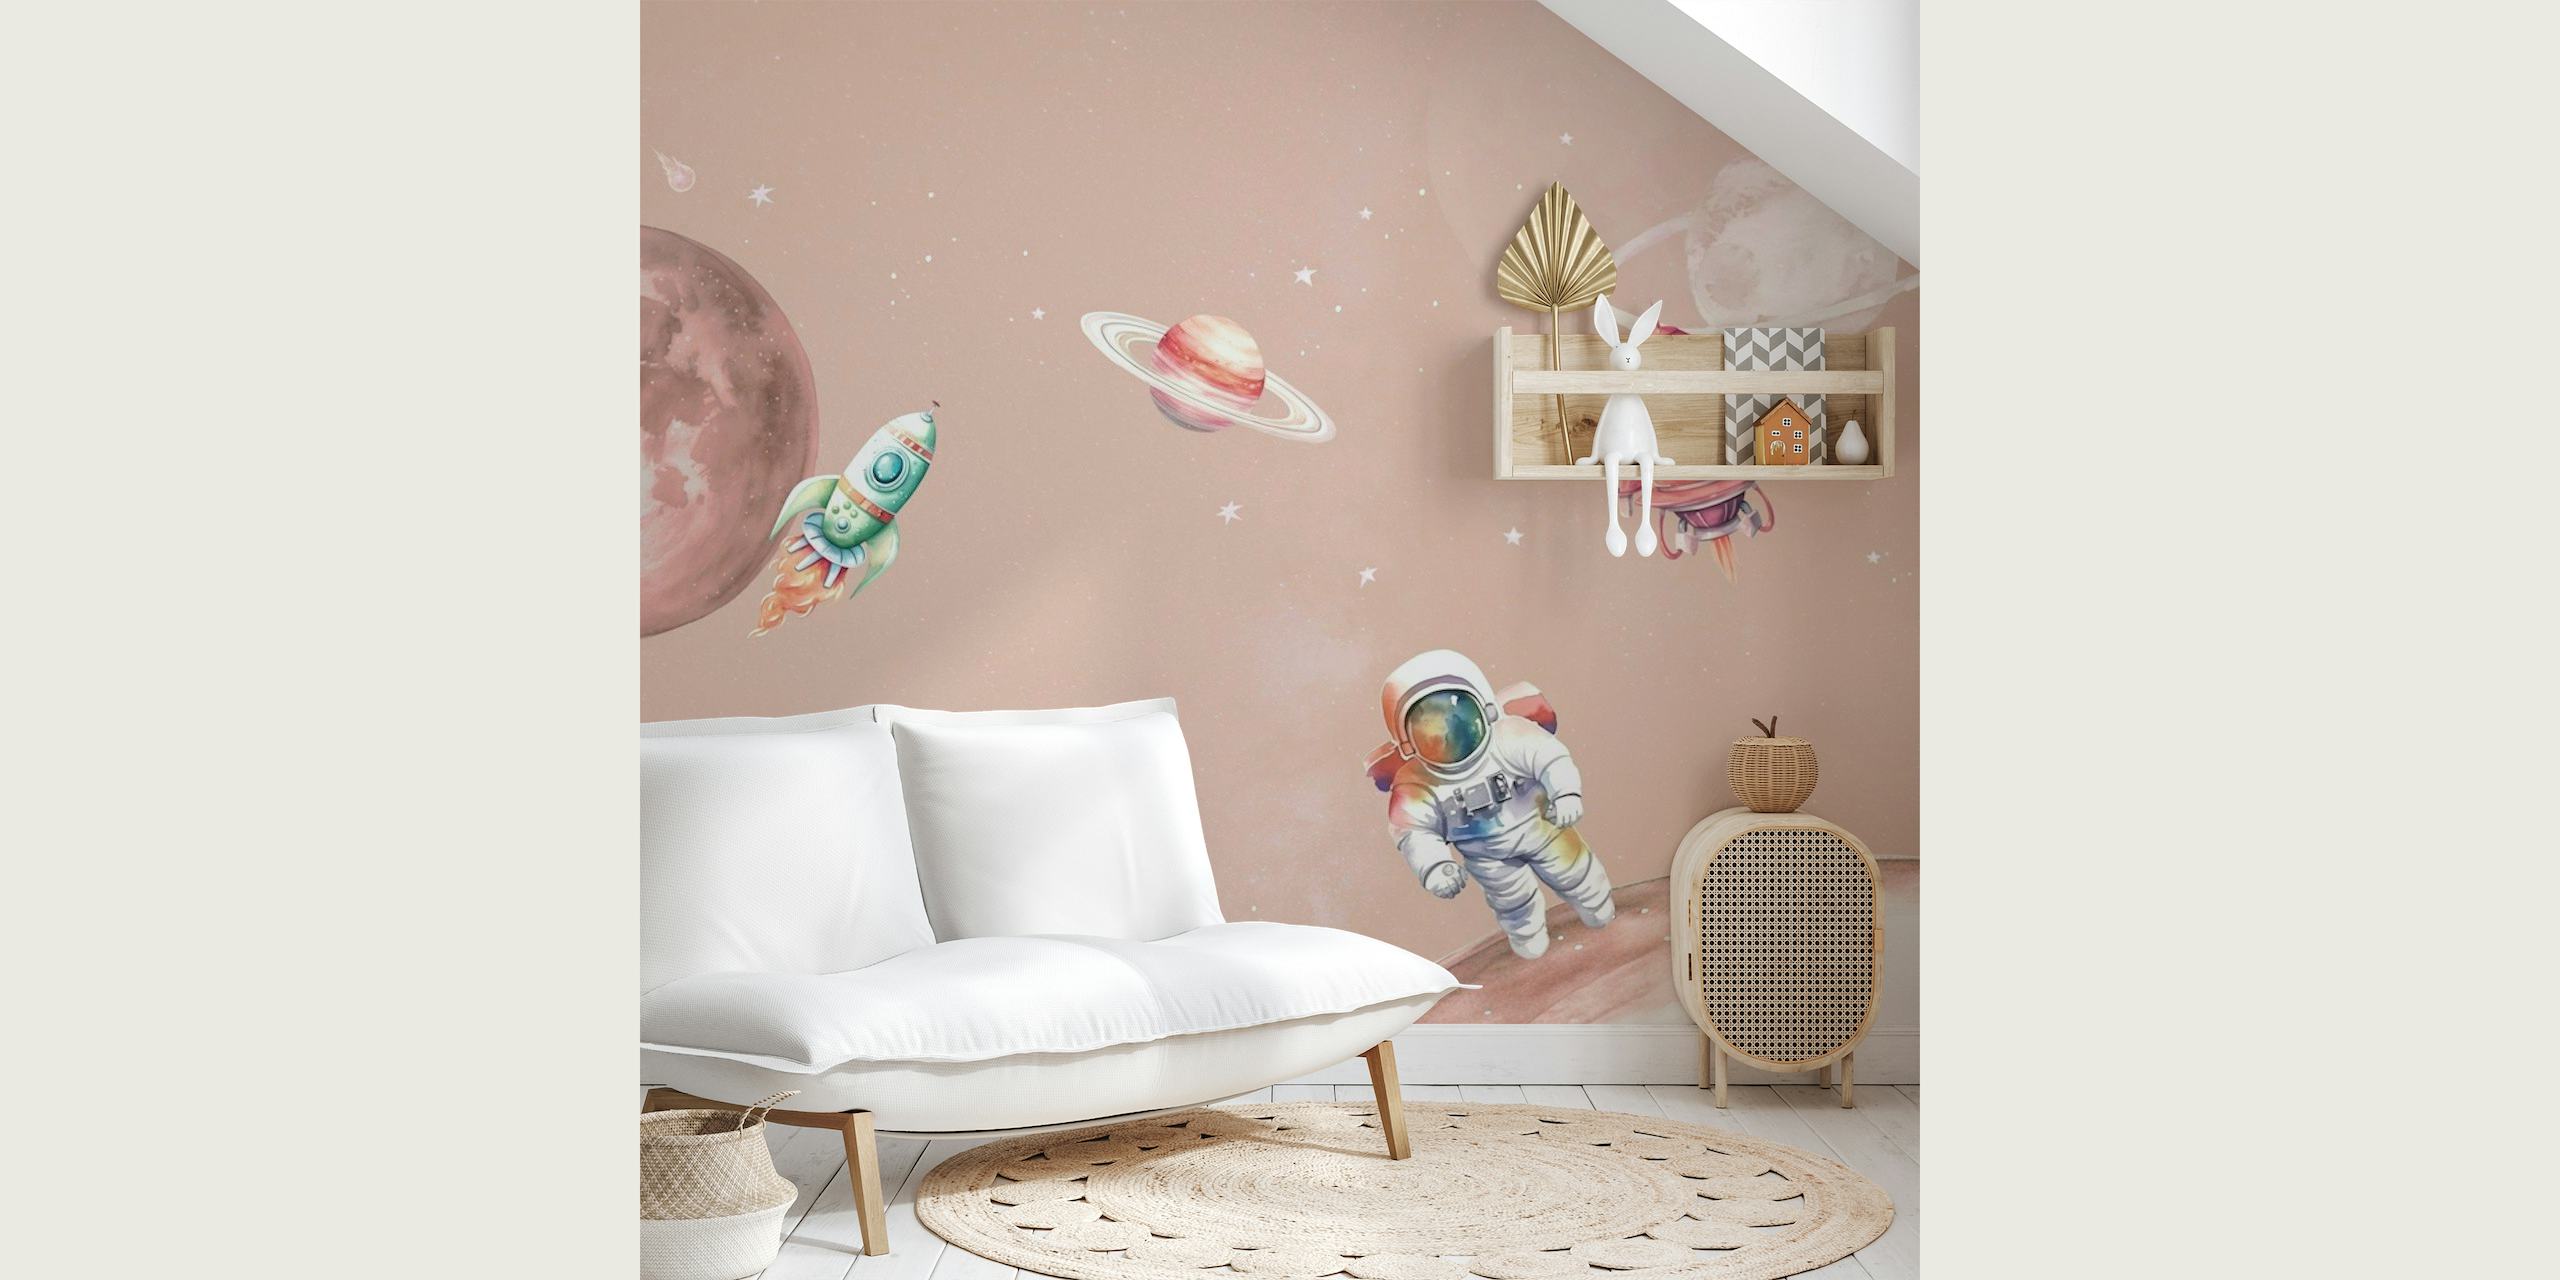 Väggdekor i tecknad stil med rymdscen med en astronaut, planeter och rymdskepp på en rodnad rosa bakgrund.